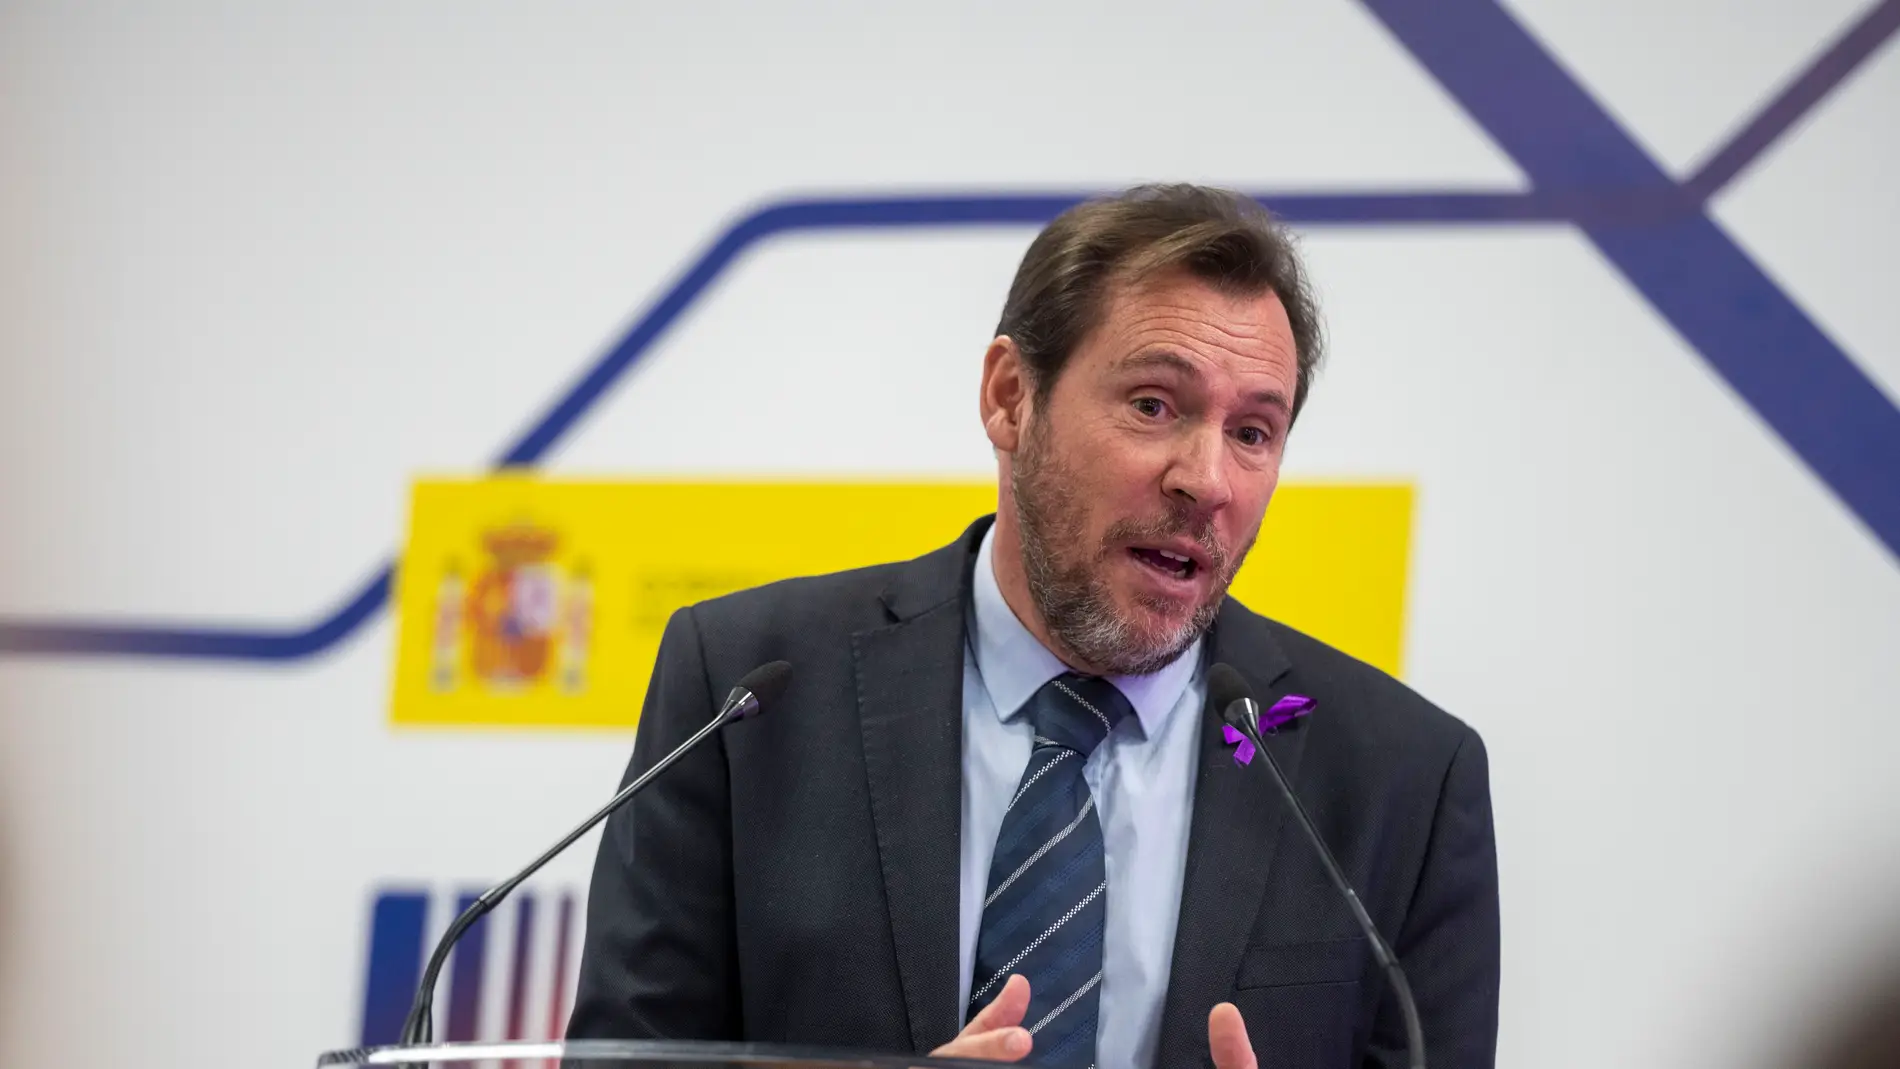 El ministro de Transportes y Movilidad Sostenible, Óscar Puente, durante una comparecencia